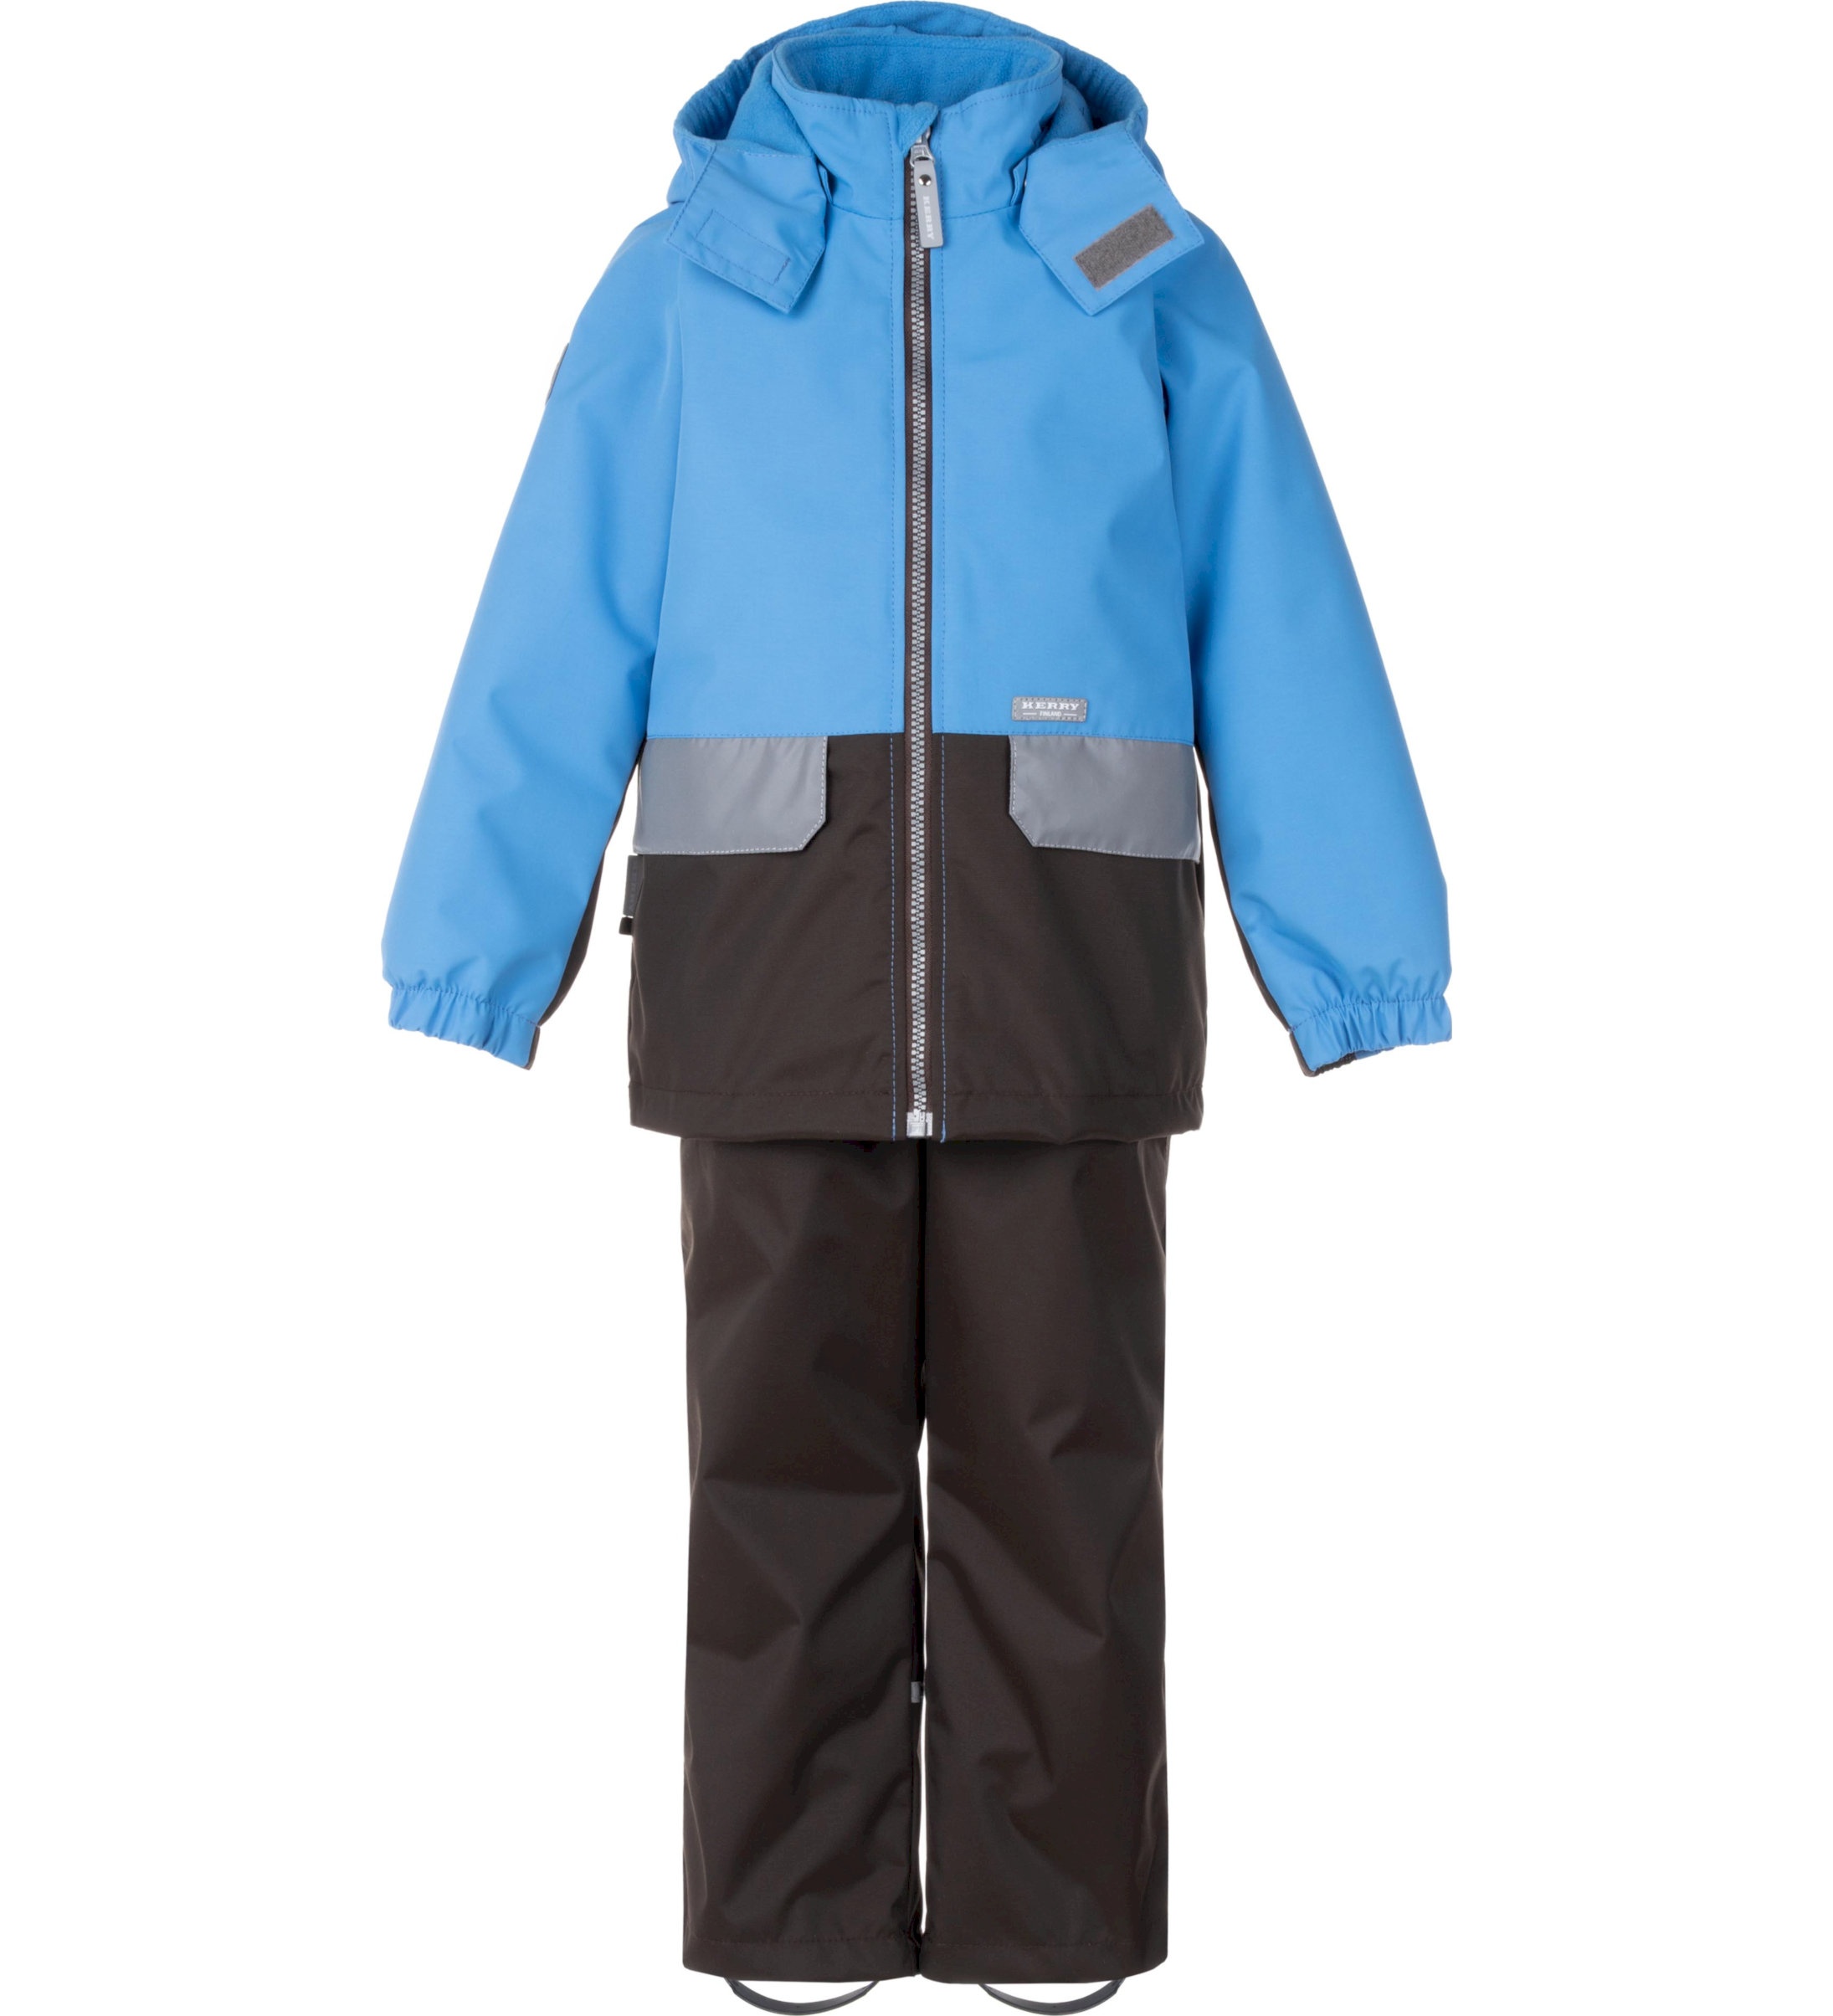 Комплект верхней одежды детский KERRY K24020, голубой; серый, 116